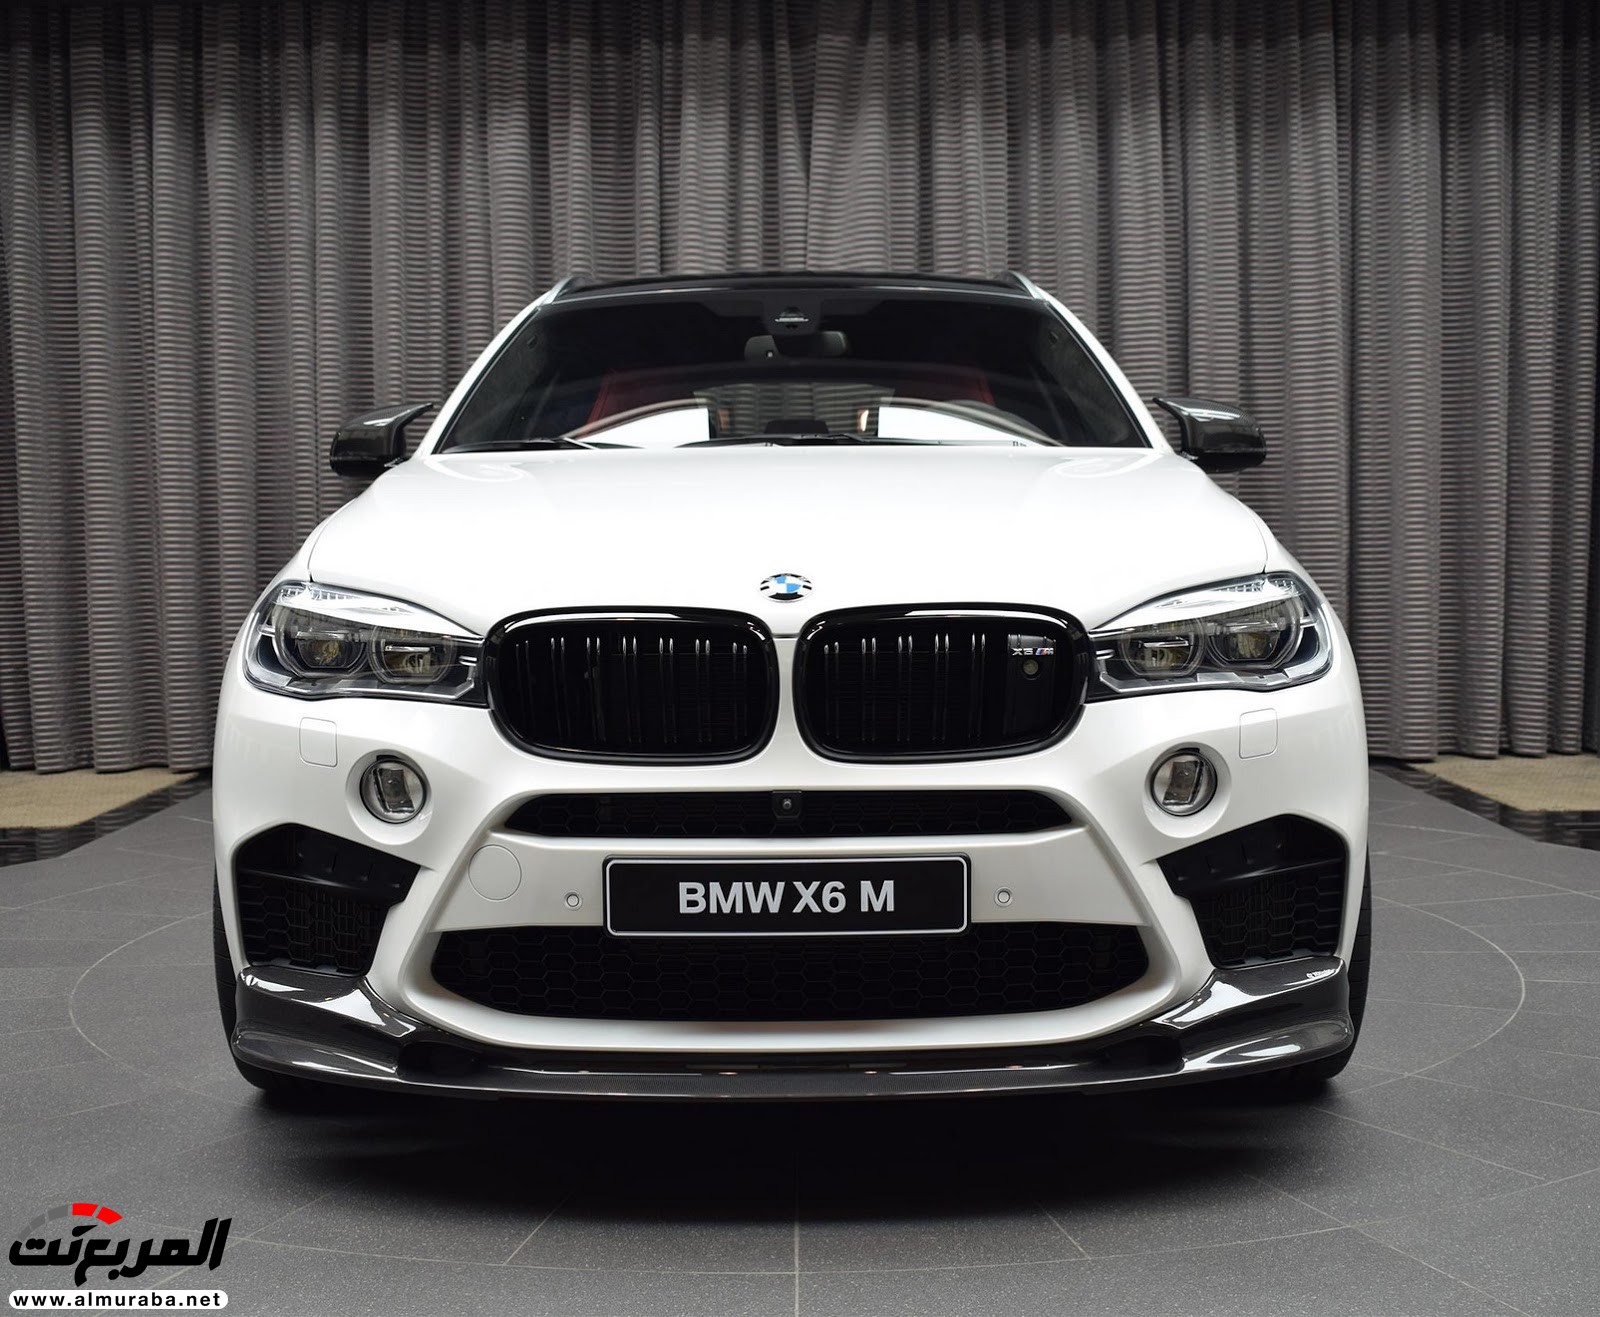 "بي إم دبليو" X6 M عالية الأداء معدّلة بتصاميم 3D معروضة بأبو ظبي BMW 29